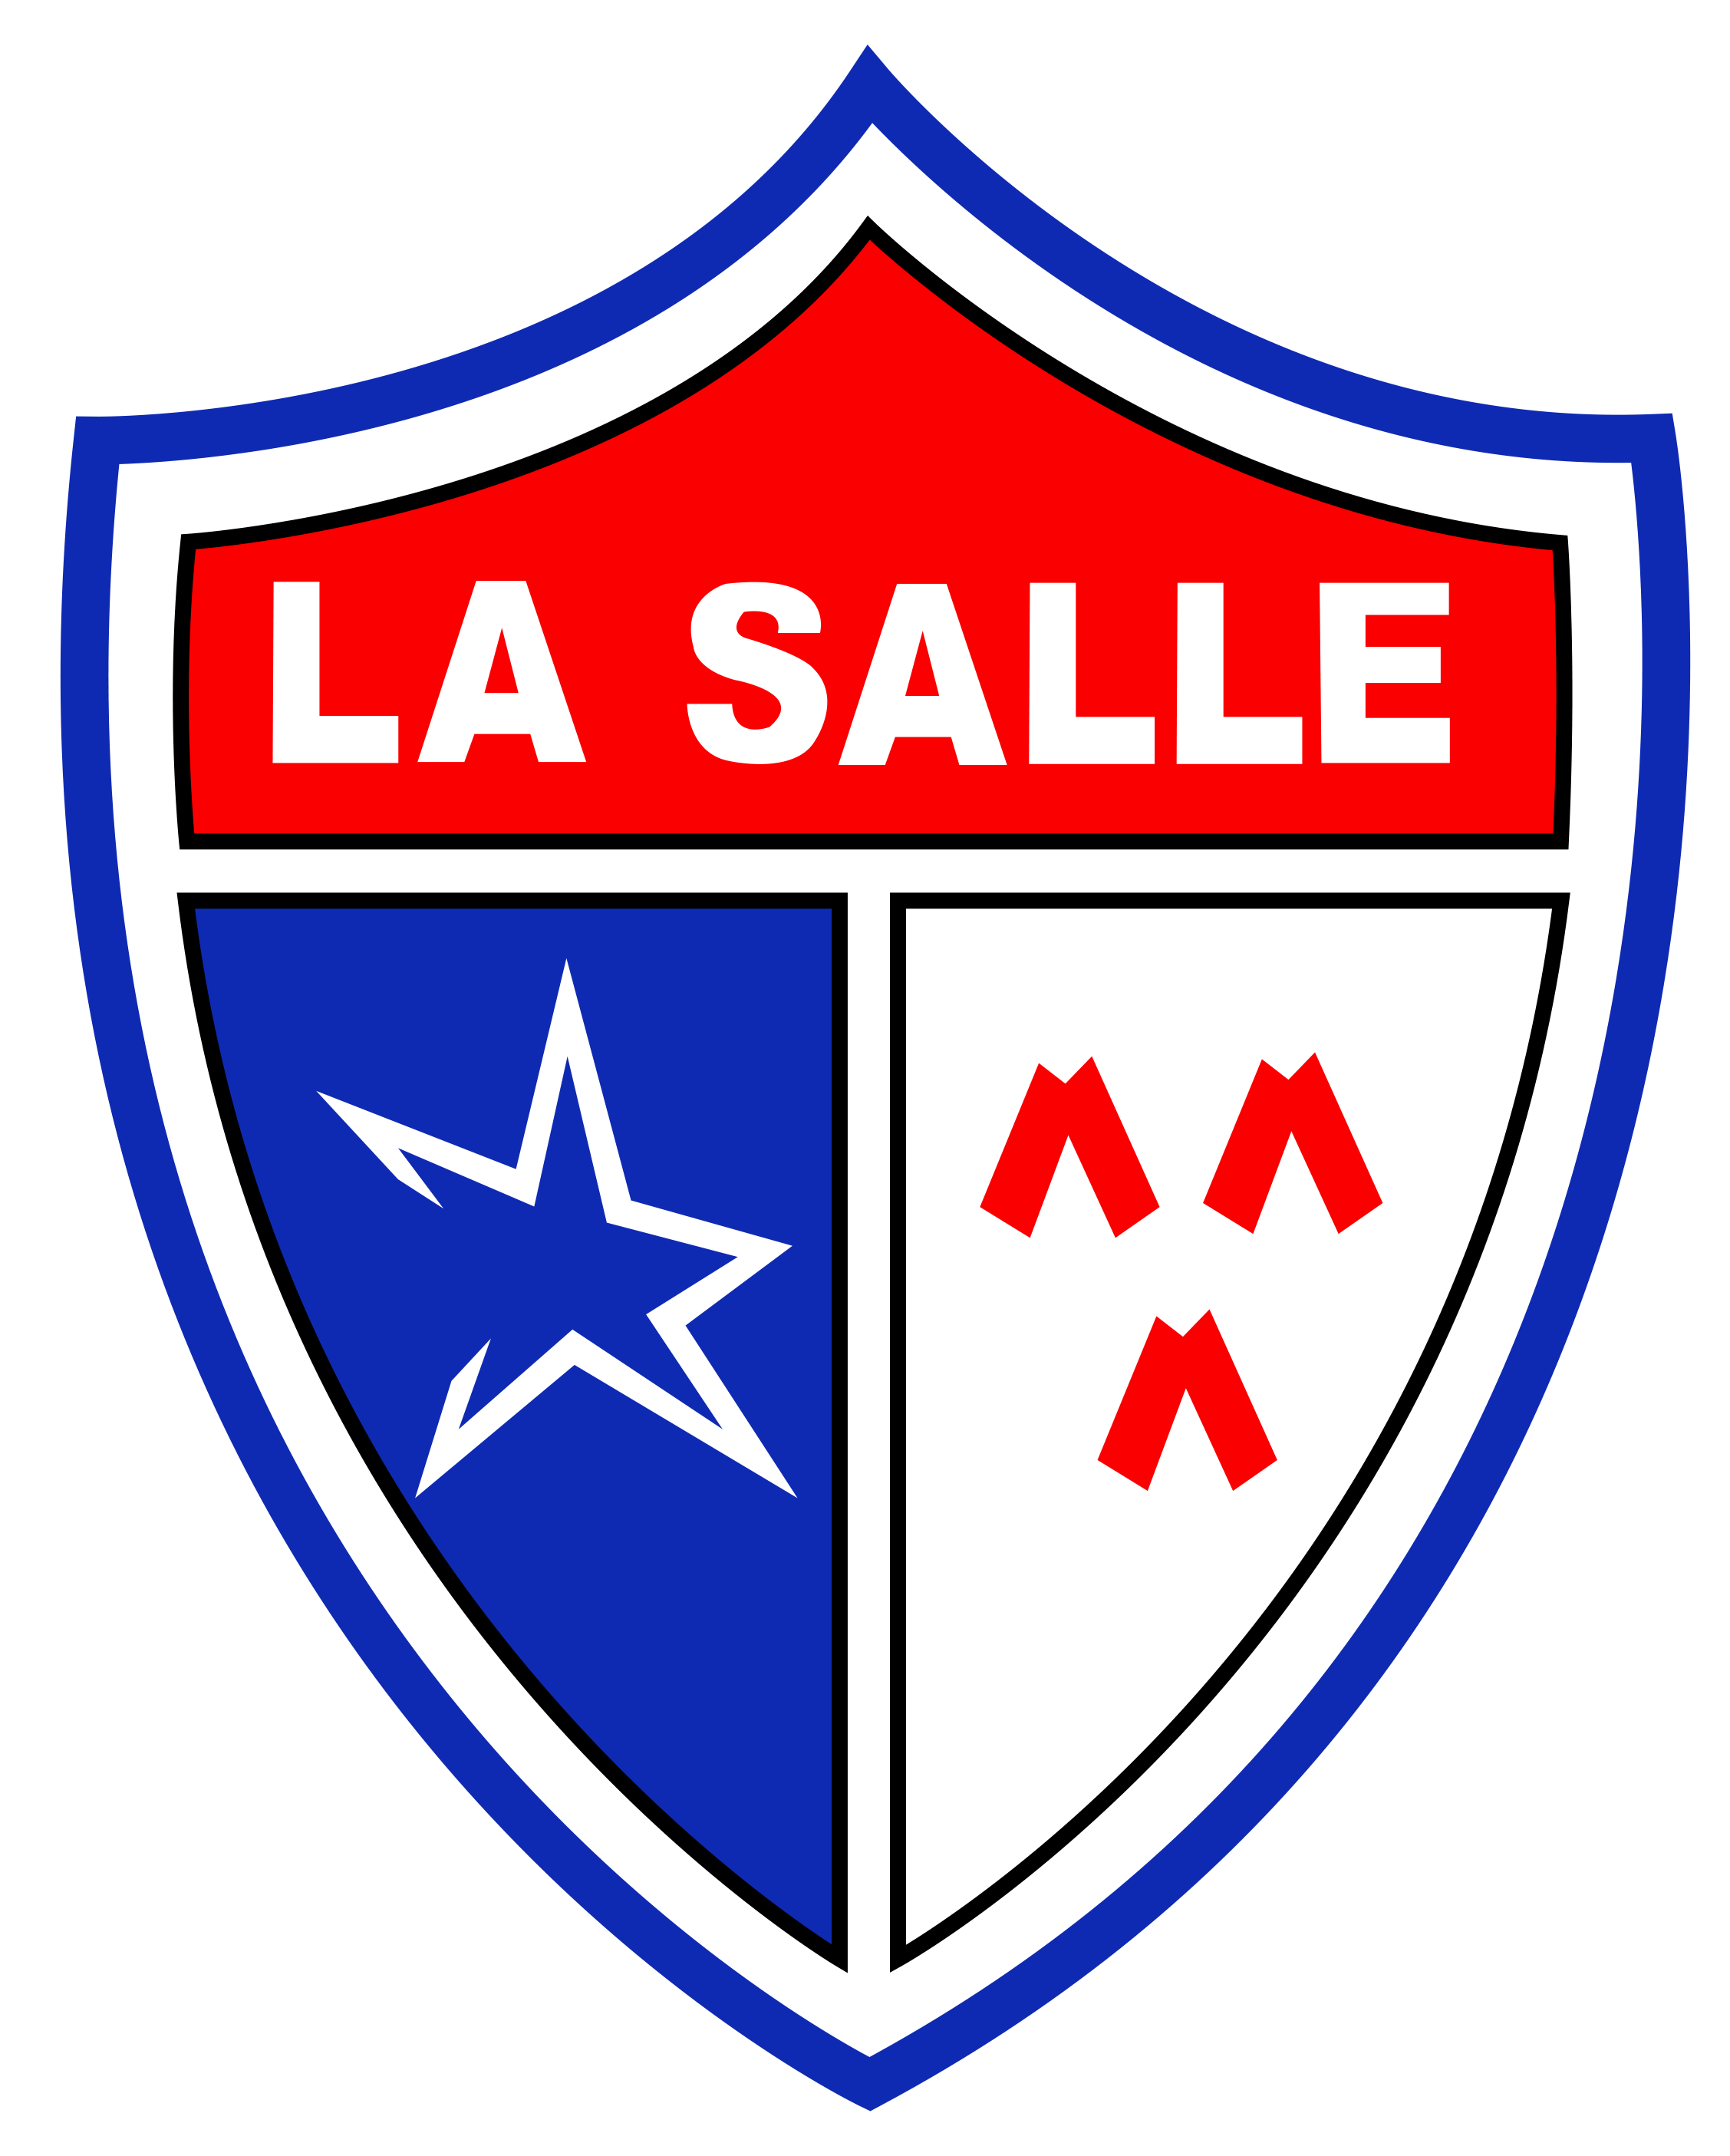 LaSalle-DistritoCA.png